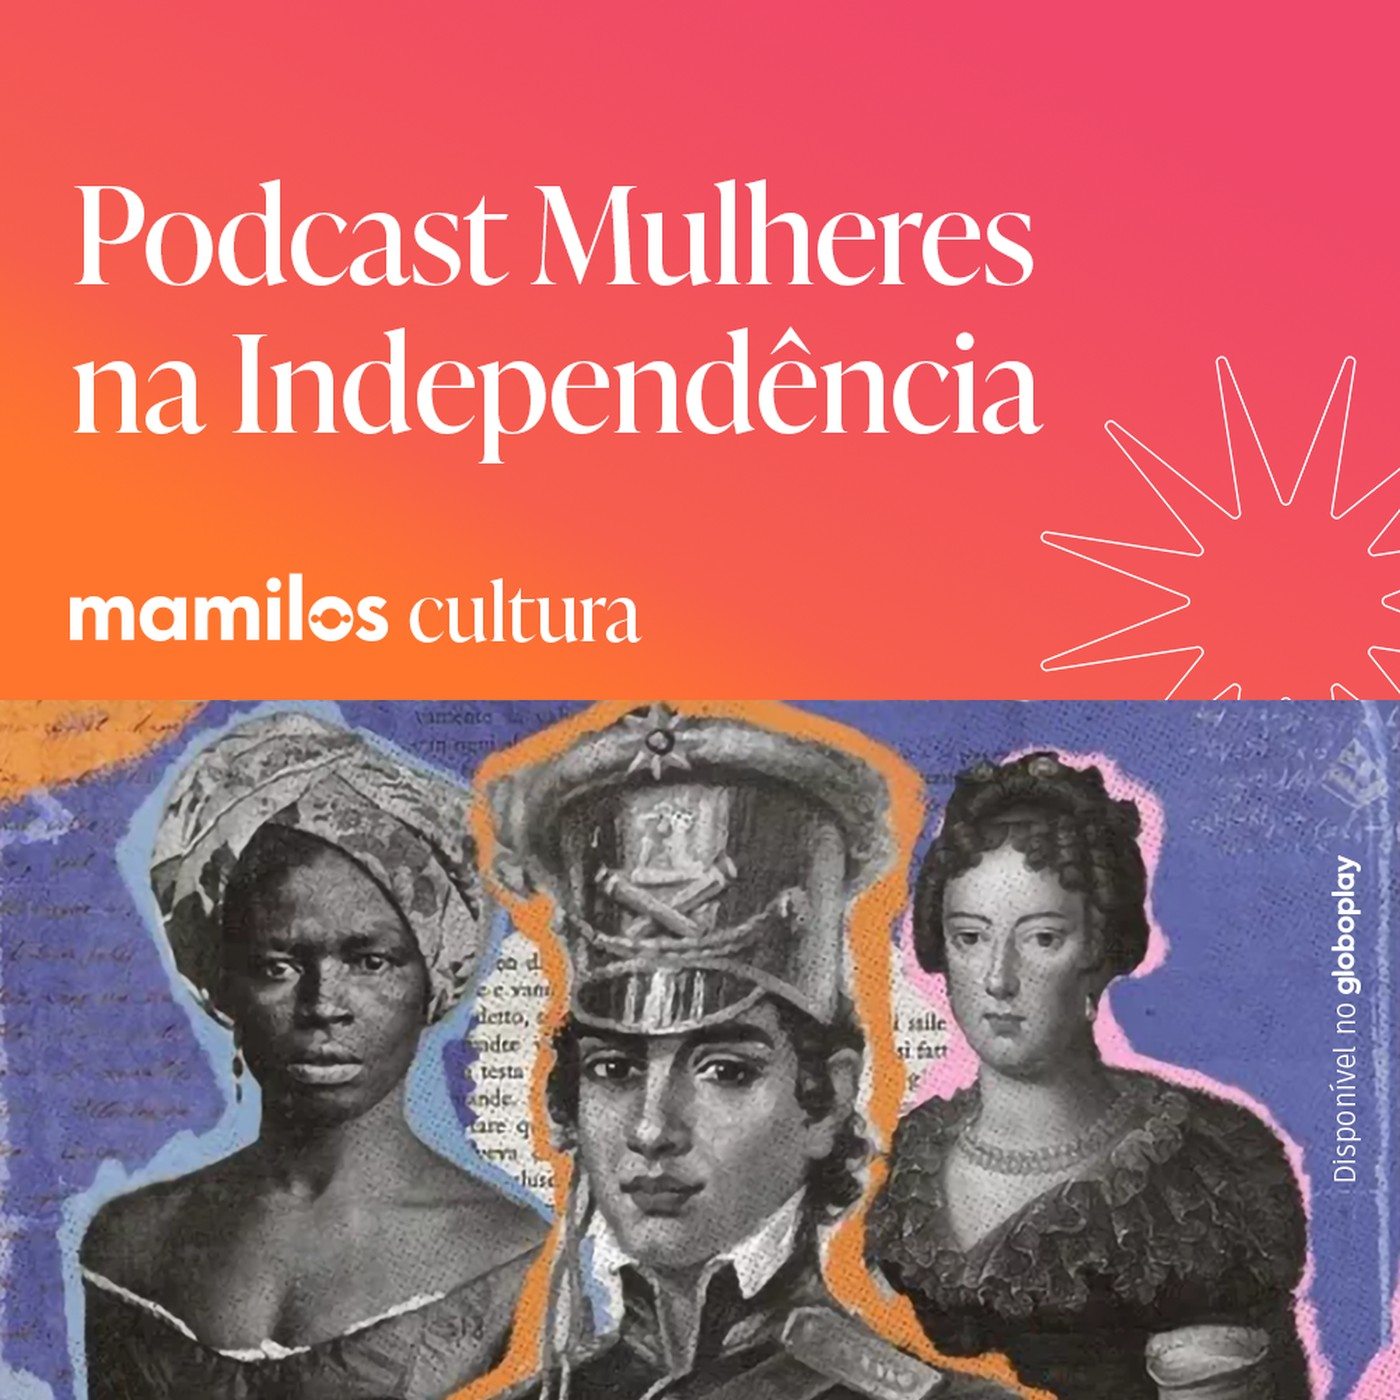 Mamilos Cultura 70: Podcast “Mulheres na Independência” - ampliando nossa história